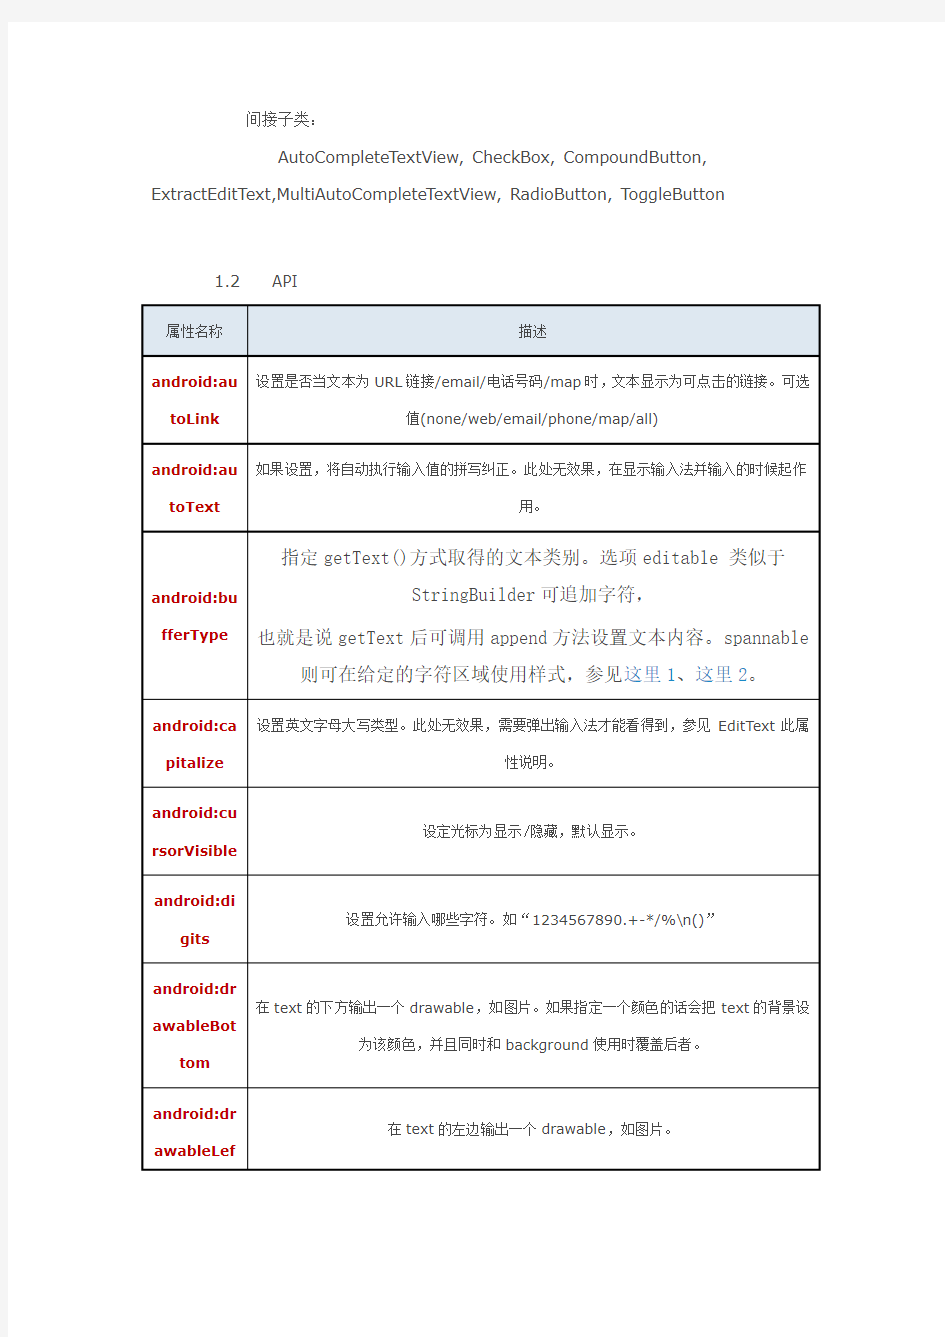 TextView - 中文文档